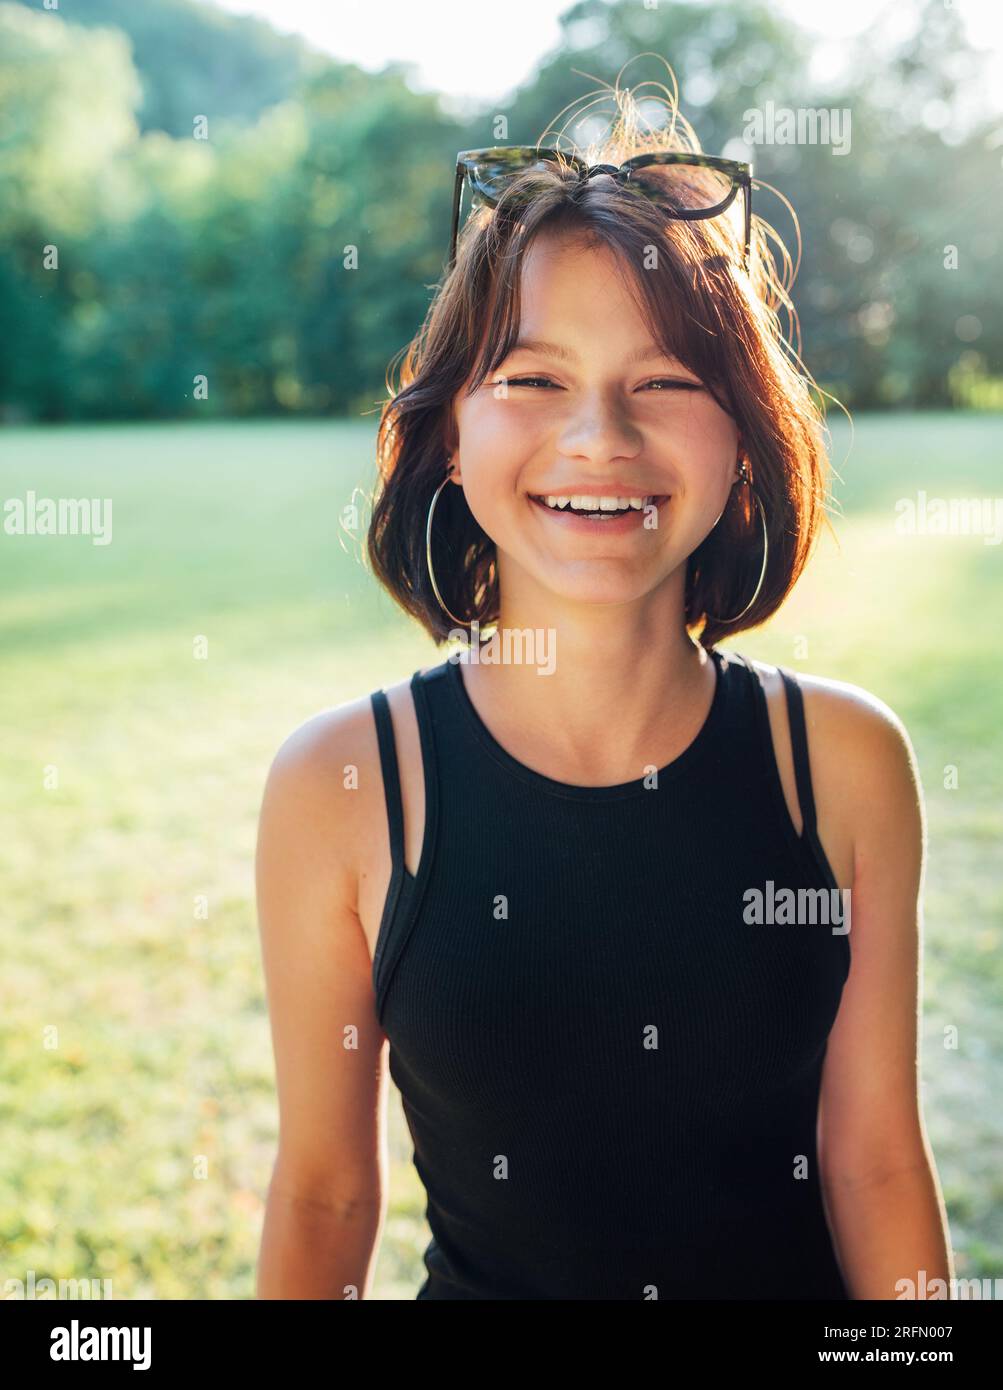 Une belle jeune adolescente souriant joyeusement à la caméra avec un chaud coucher de soleil rétro-éclairé bokeh. De belles personnes et une image de concept de mode. Banque D'Images